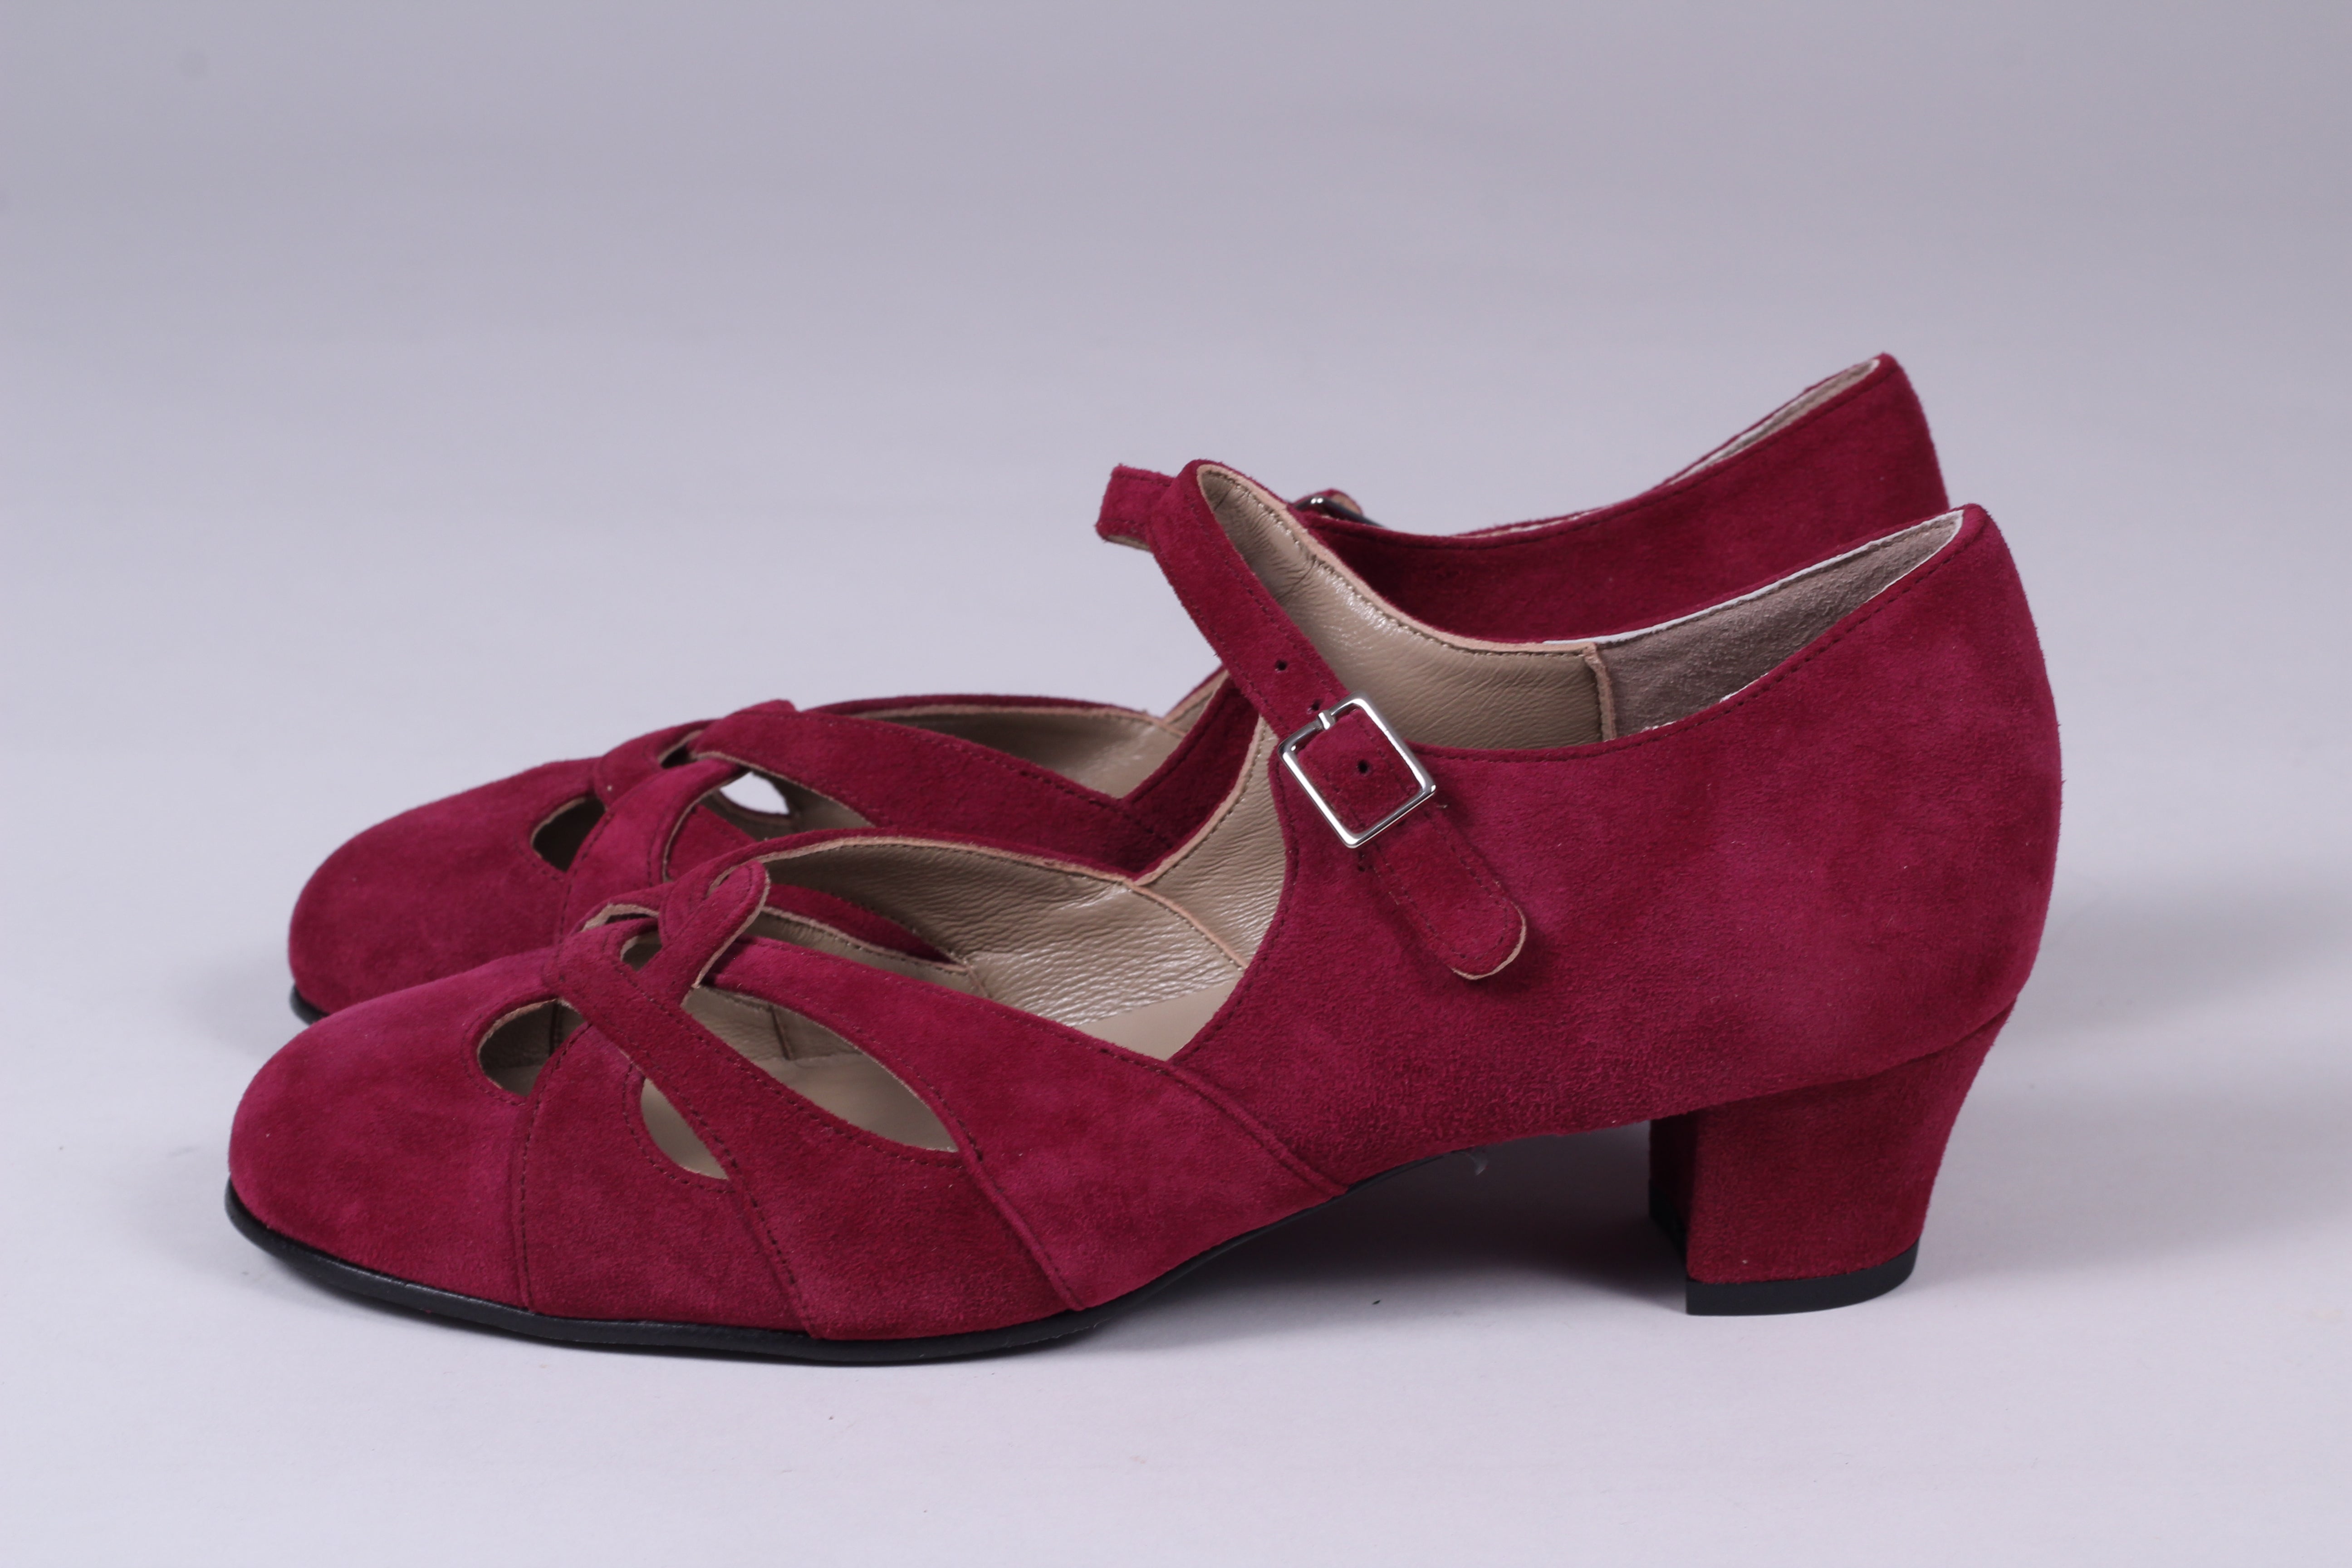 1930'er / 1940'er vintage style sandaler i ruskind - bordeaux rød Id – memery